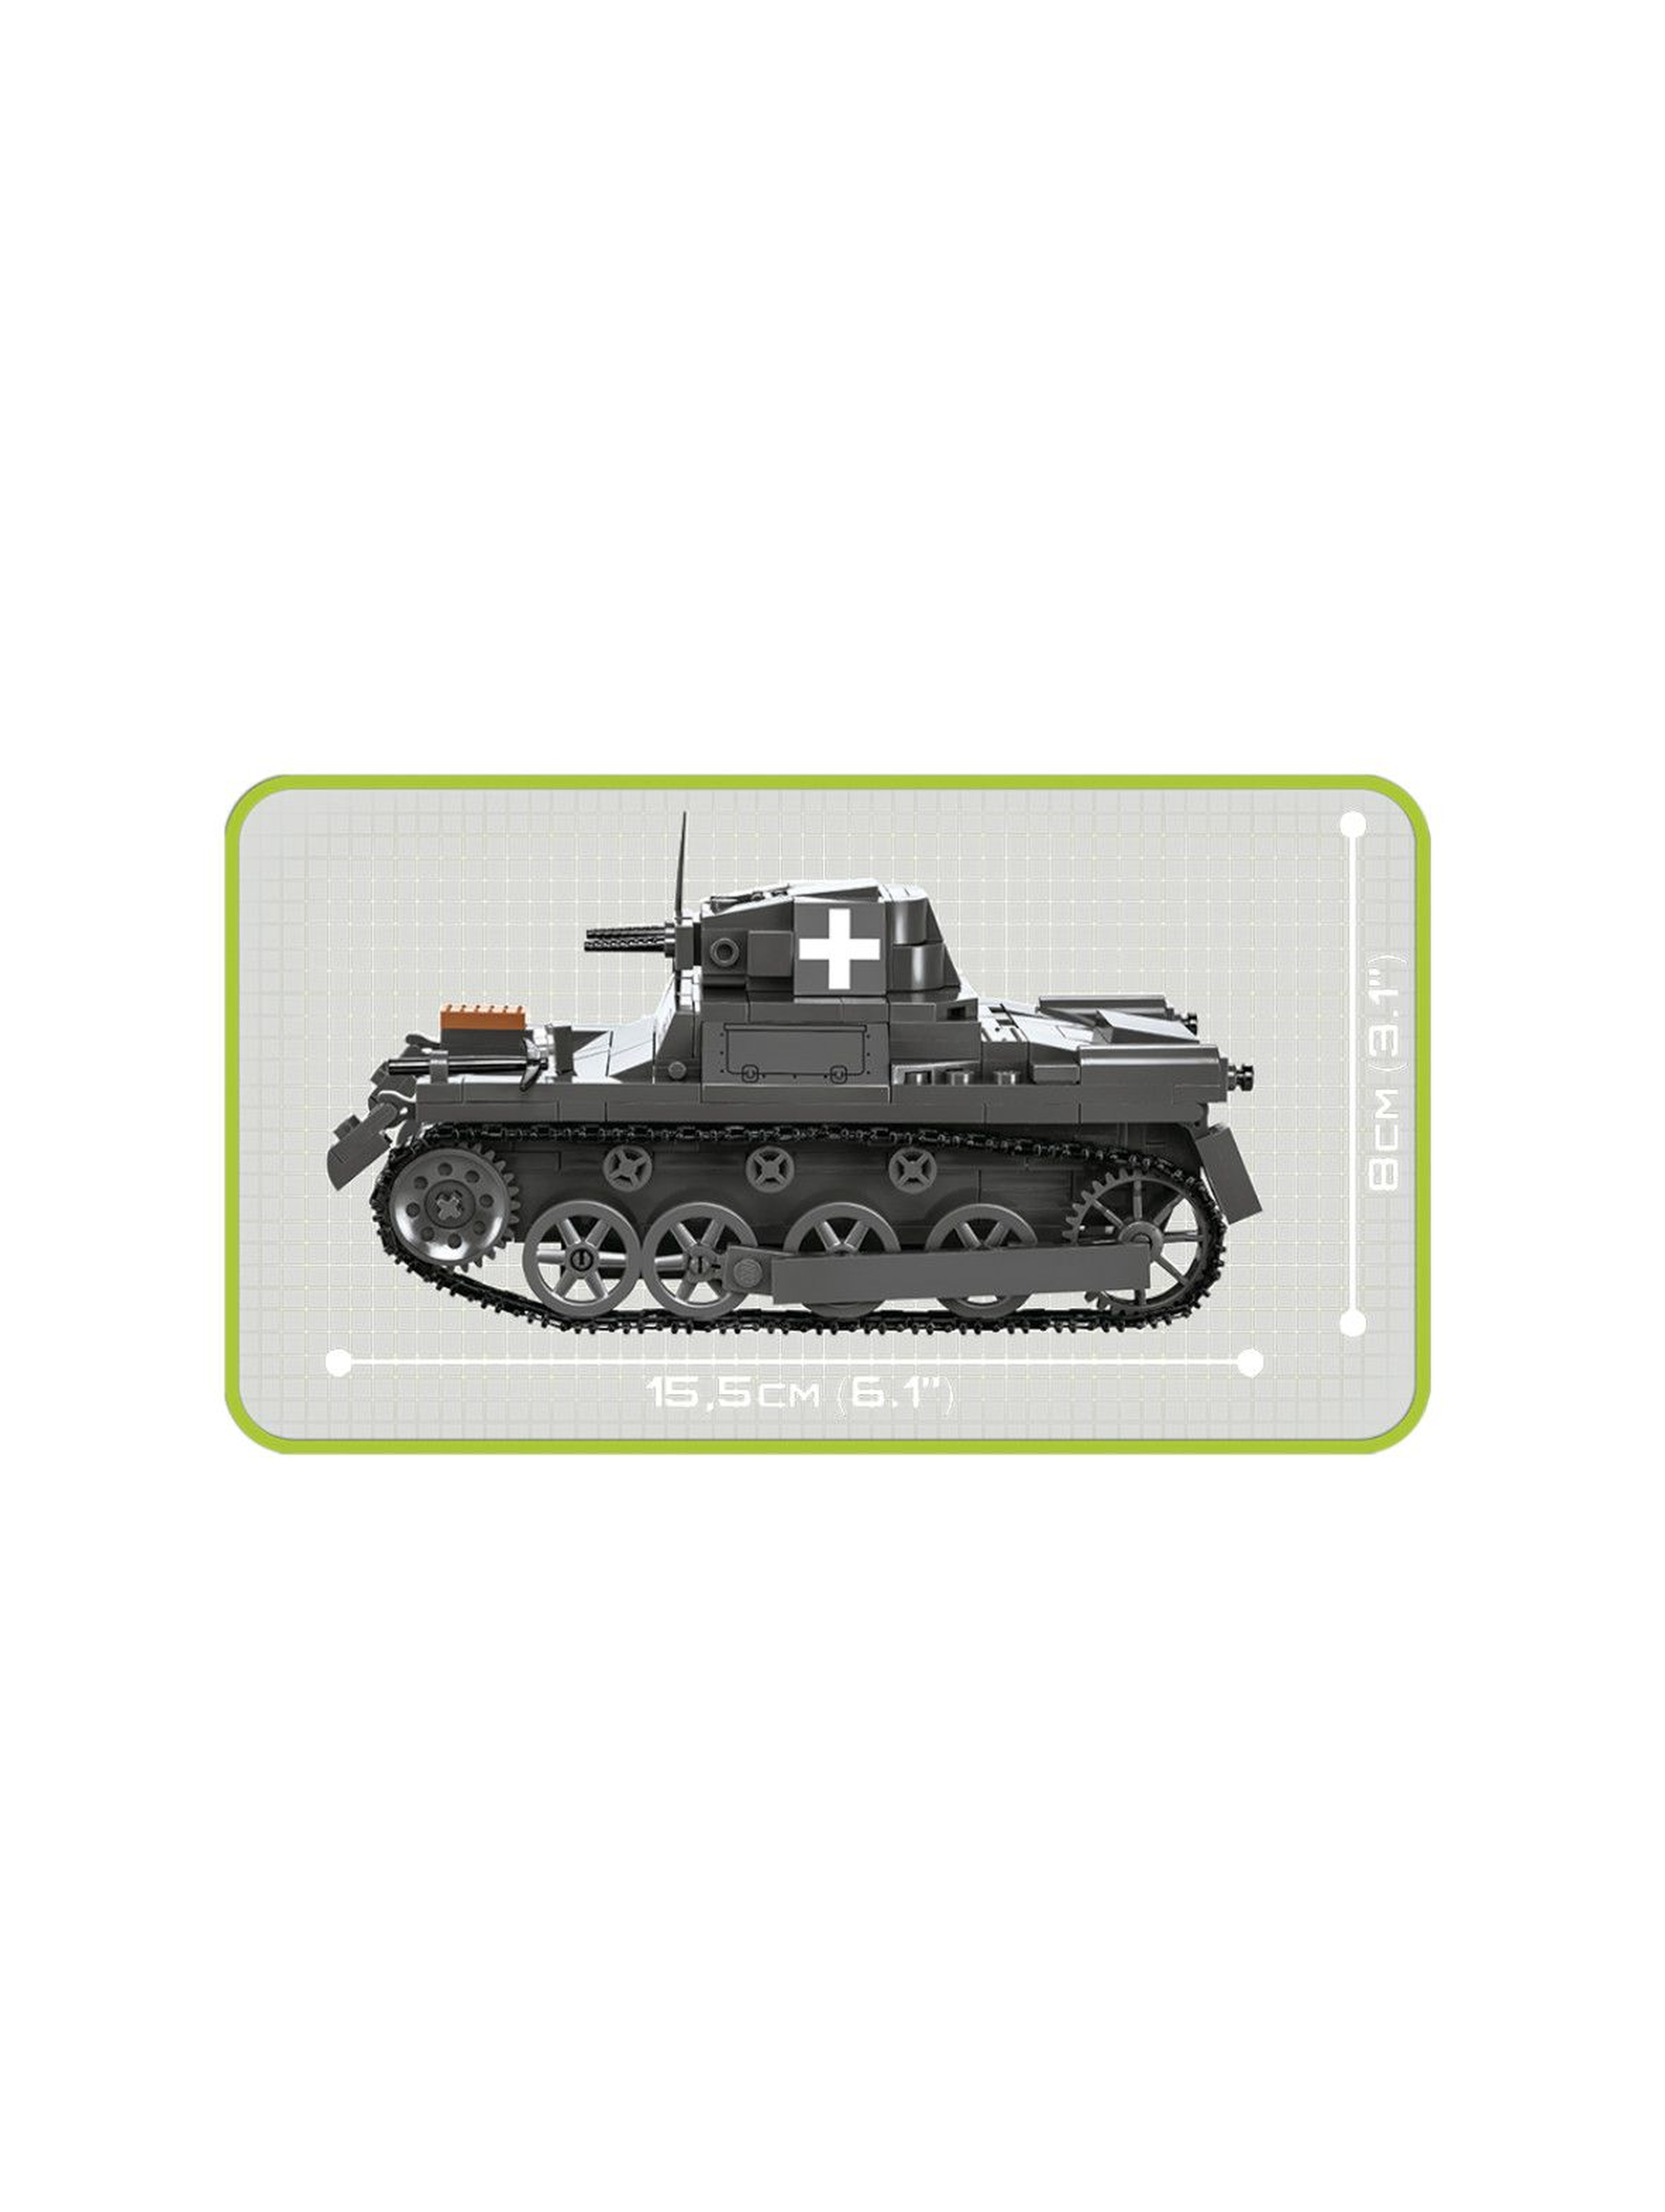 Klocki Cobi Panzer I AUSF SD KFZ 101-330 klocków wiek 6+